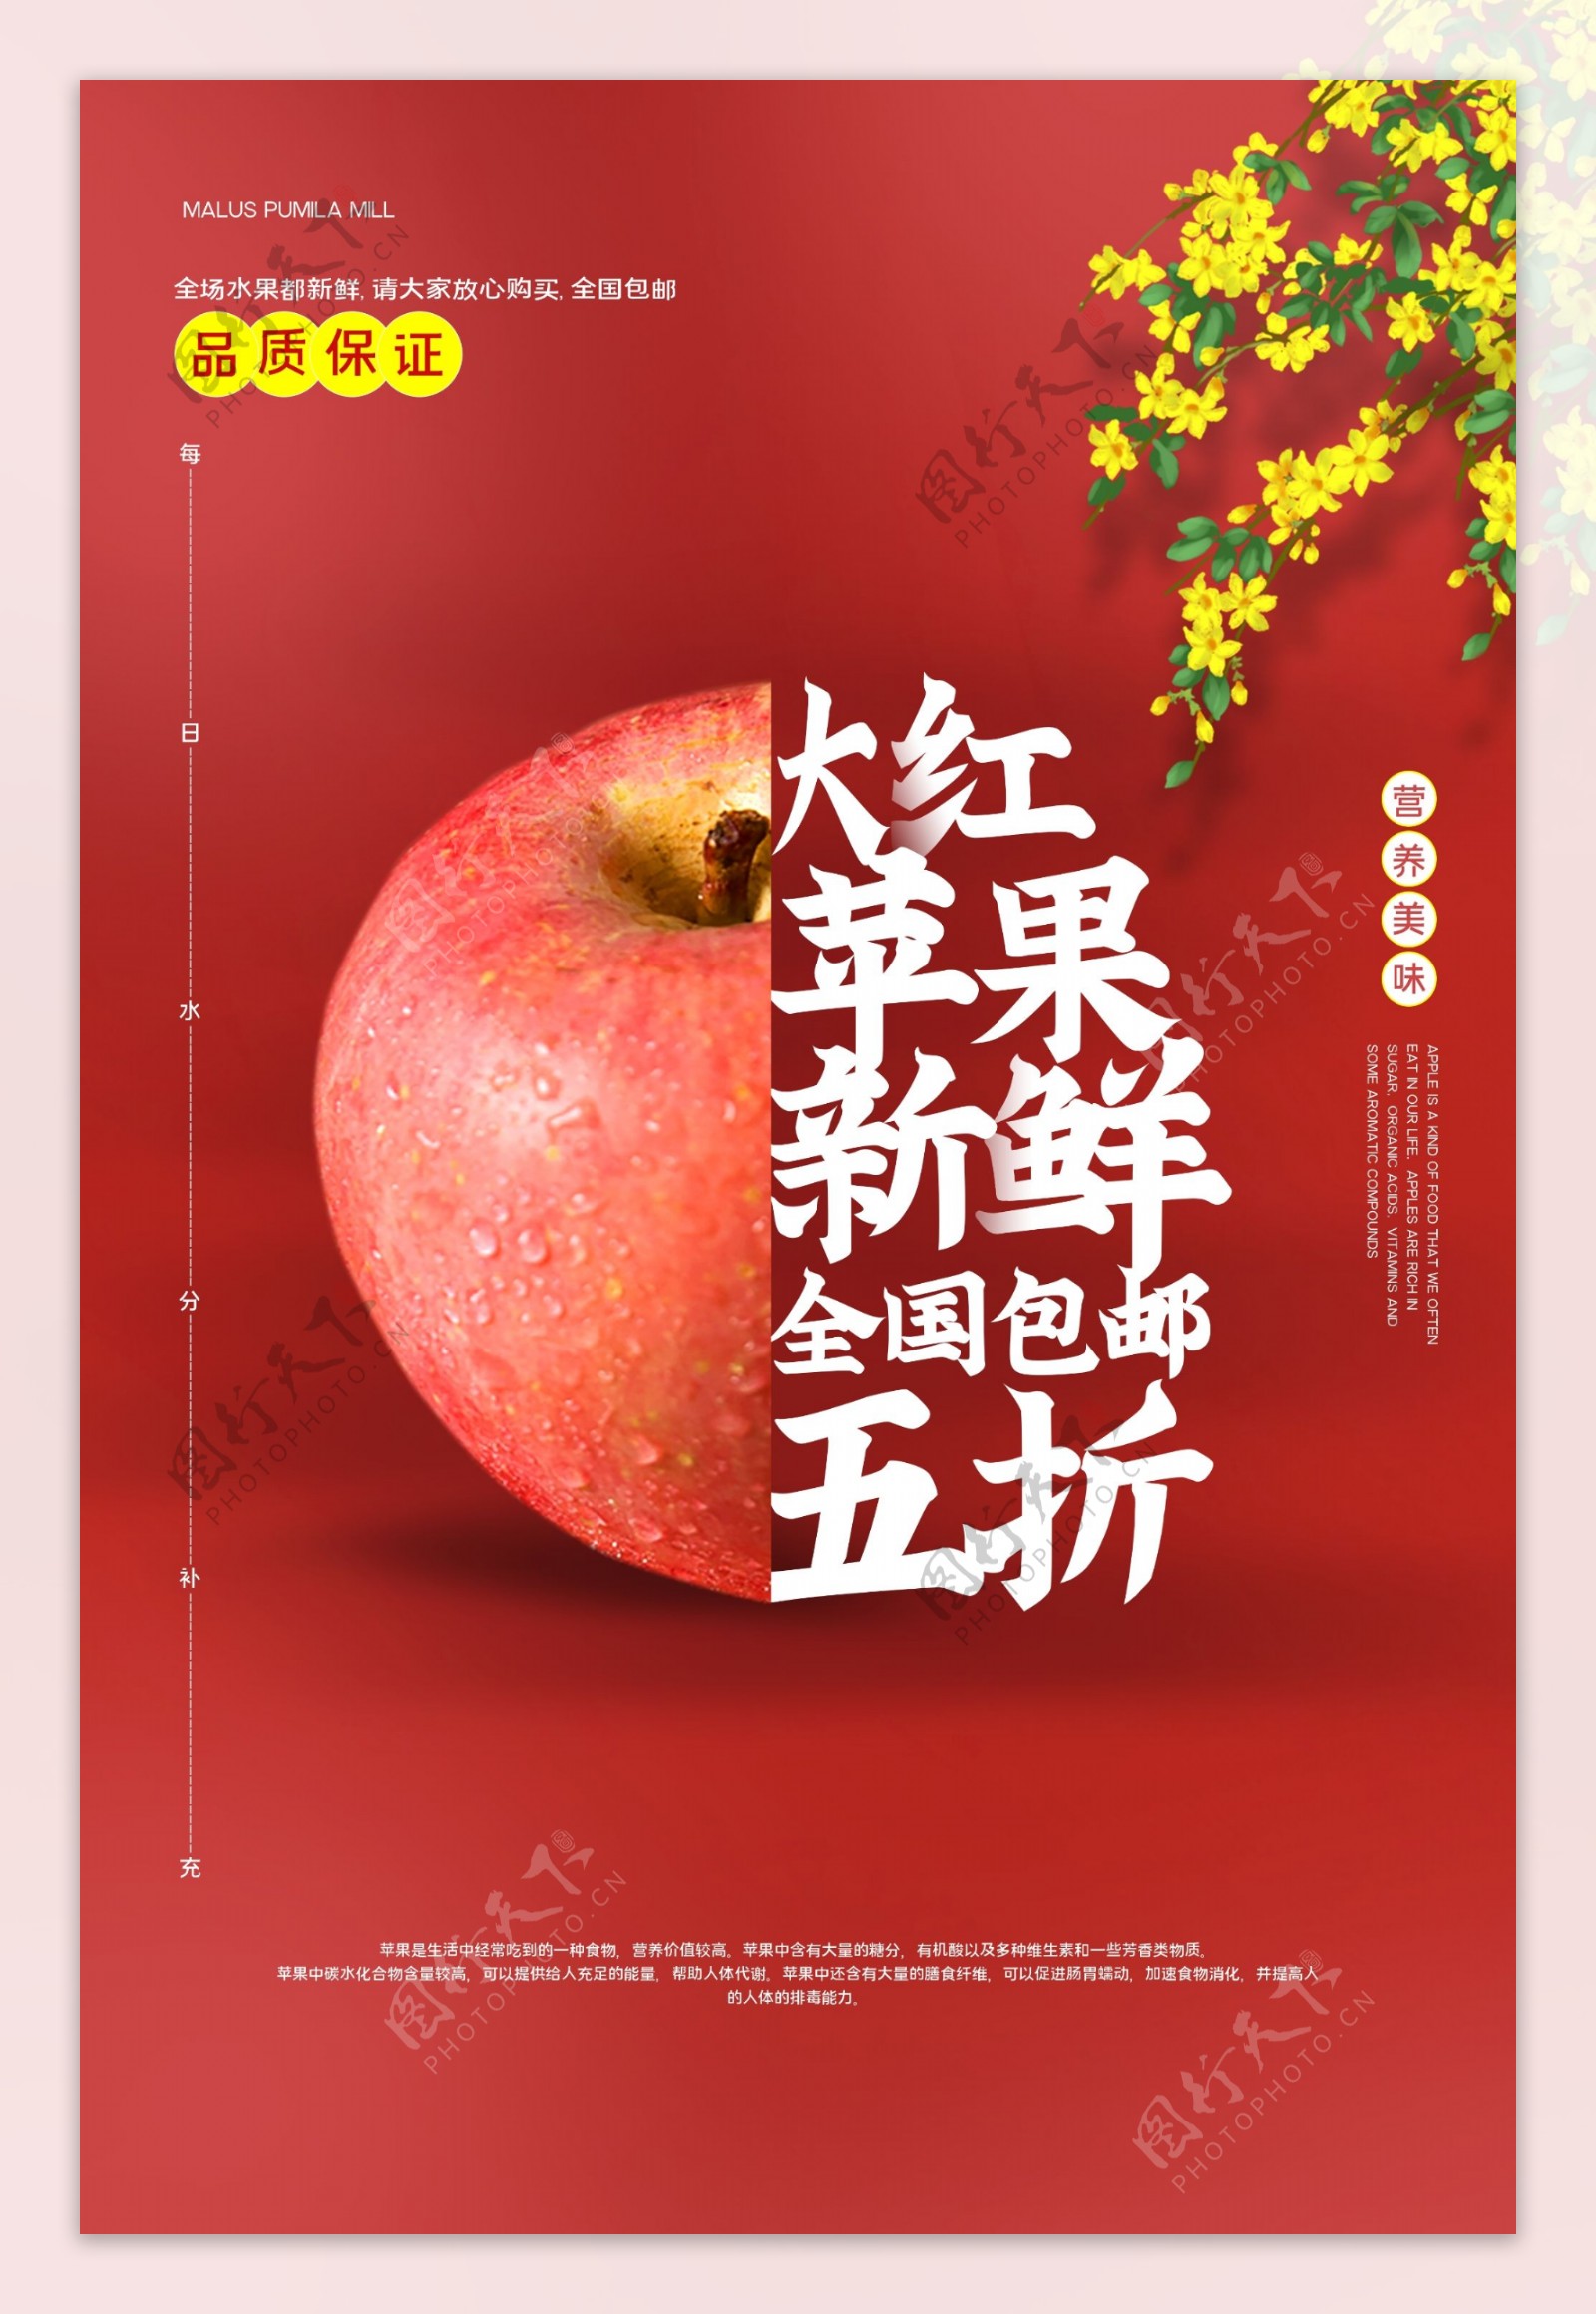 苹果水果促销活动宣传海报素材